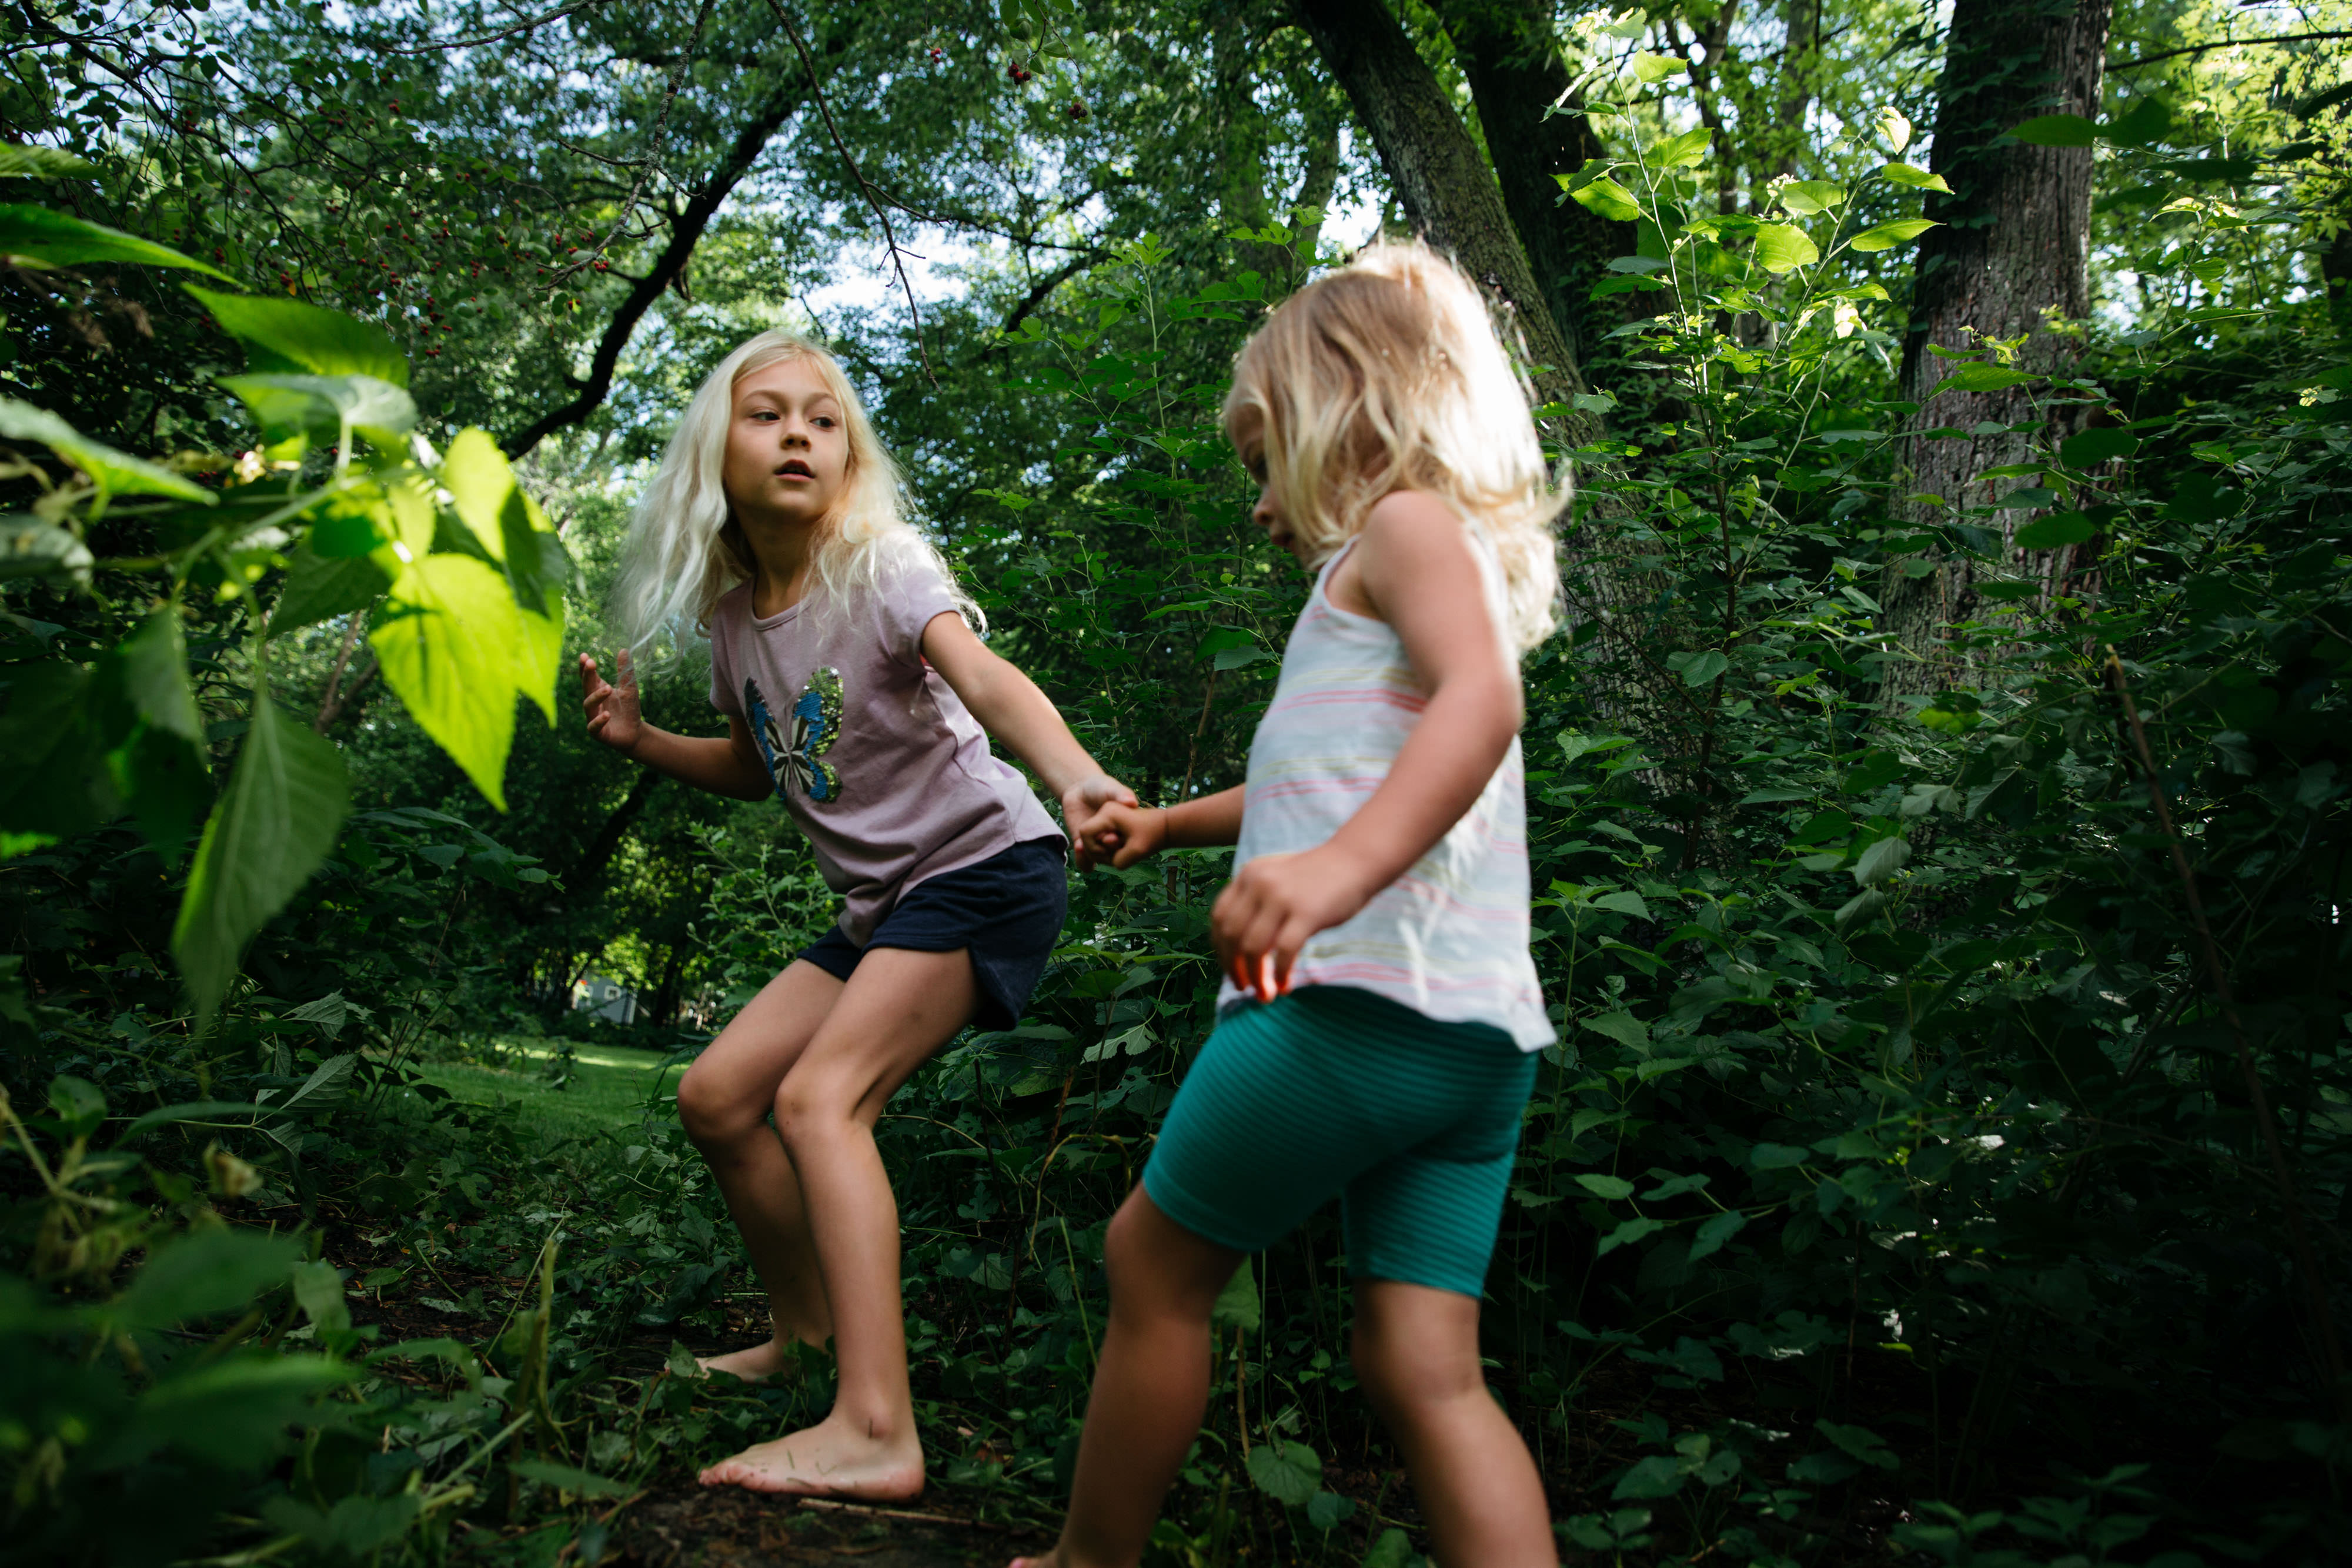 Una niña descalza toma de la mano a una niña más pequeña también descalza para dirigirla a través de un hueco en los arbustos.